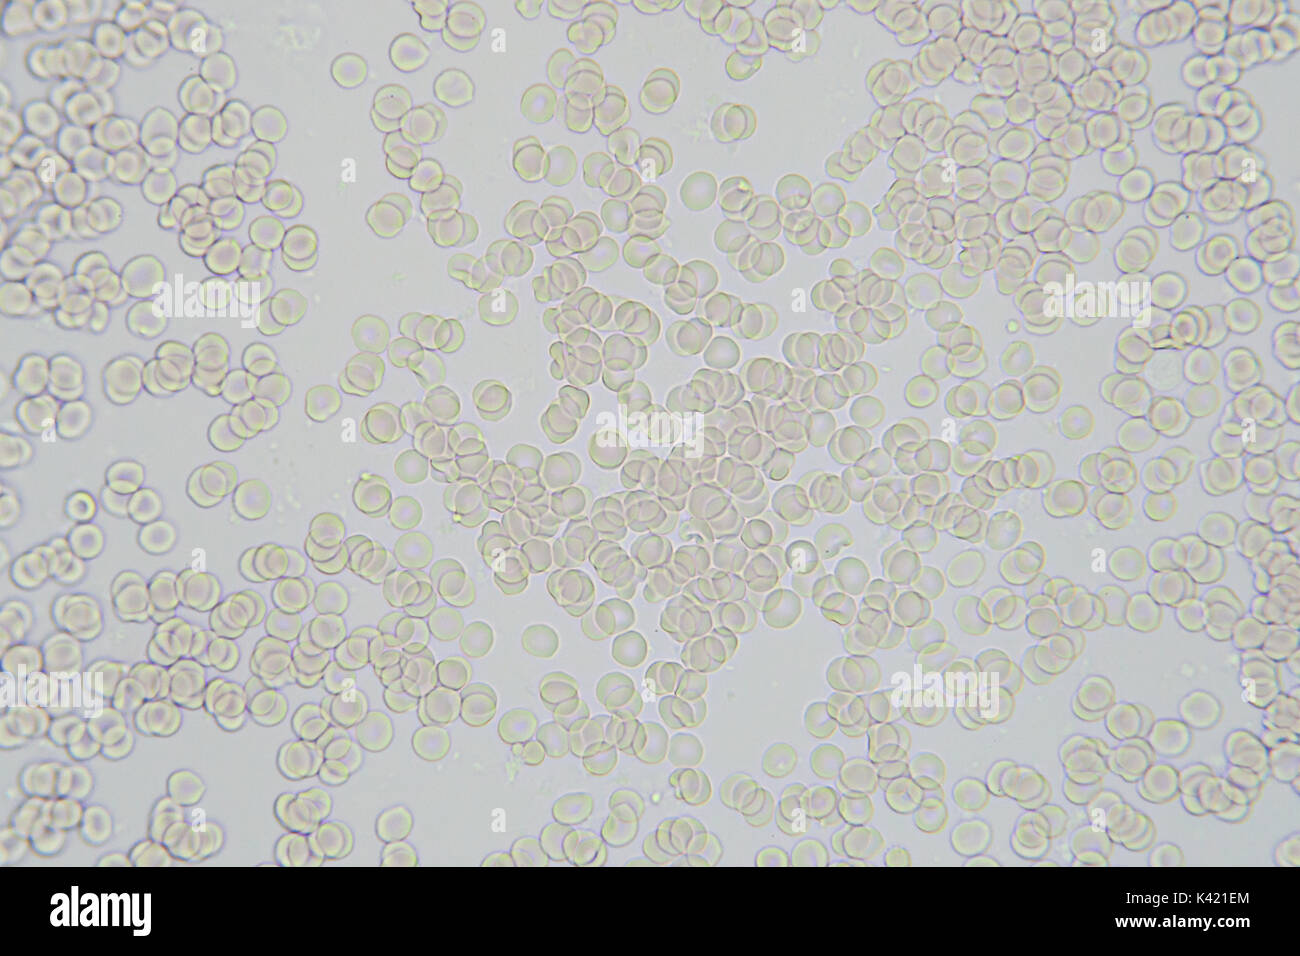 Ampliación de imagen microscópica de las células de la sangre x 400 Foto de stock